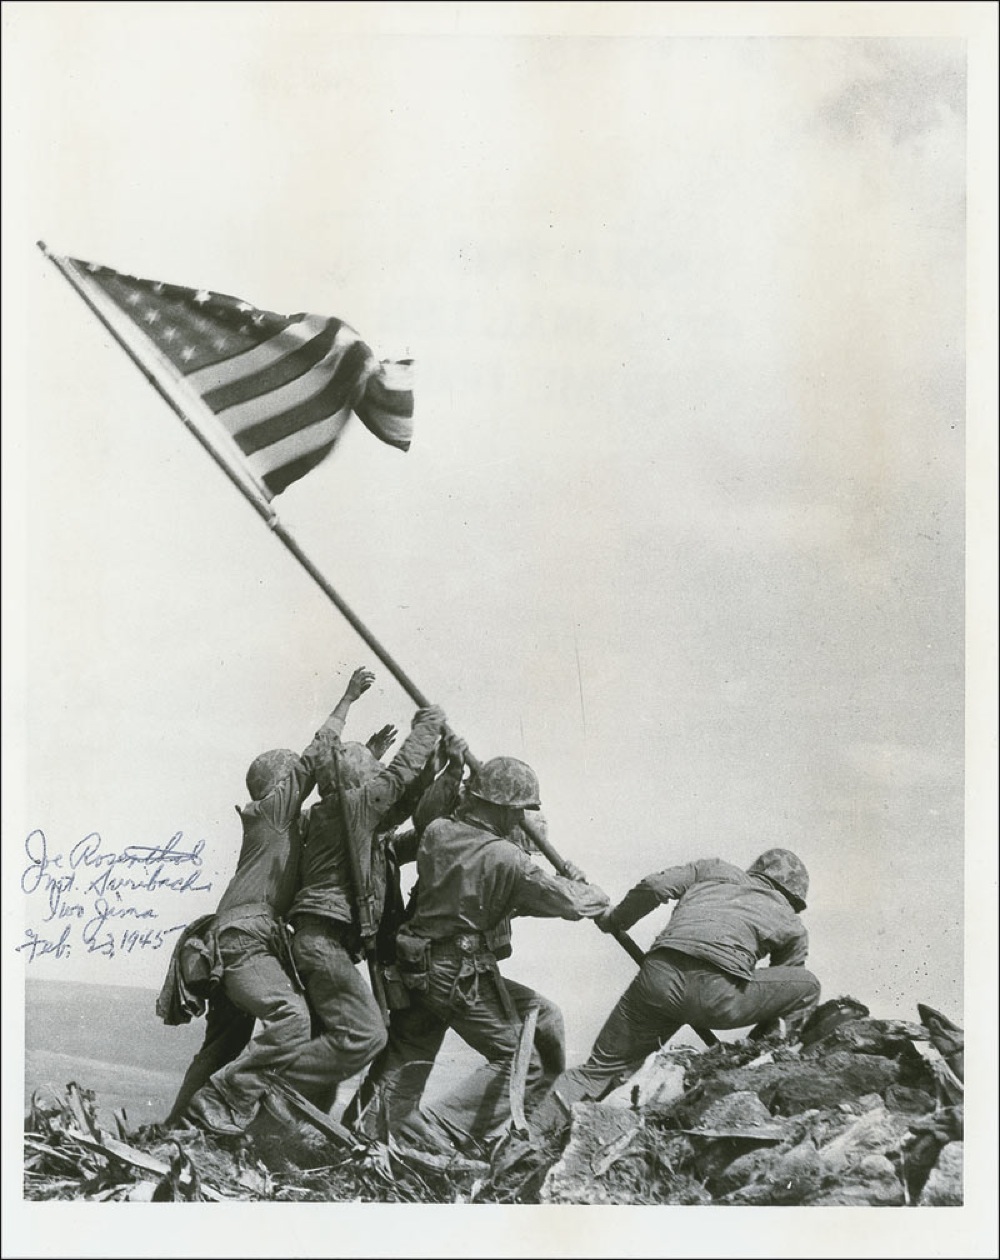 Lot #387 Iwo Jima: Joe Rosenthal